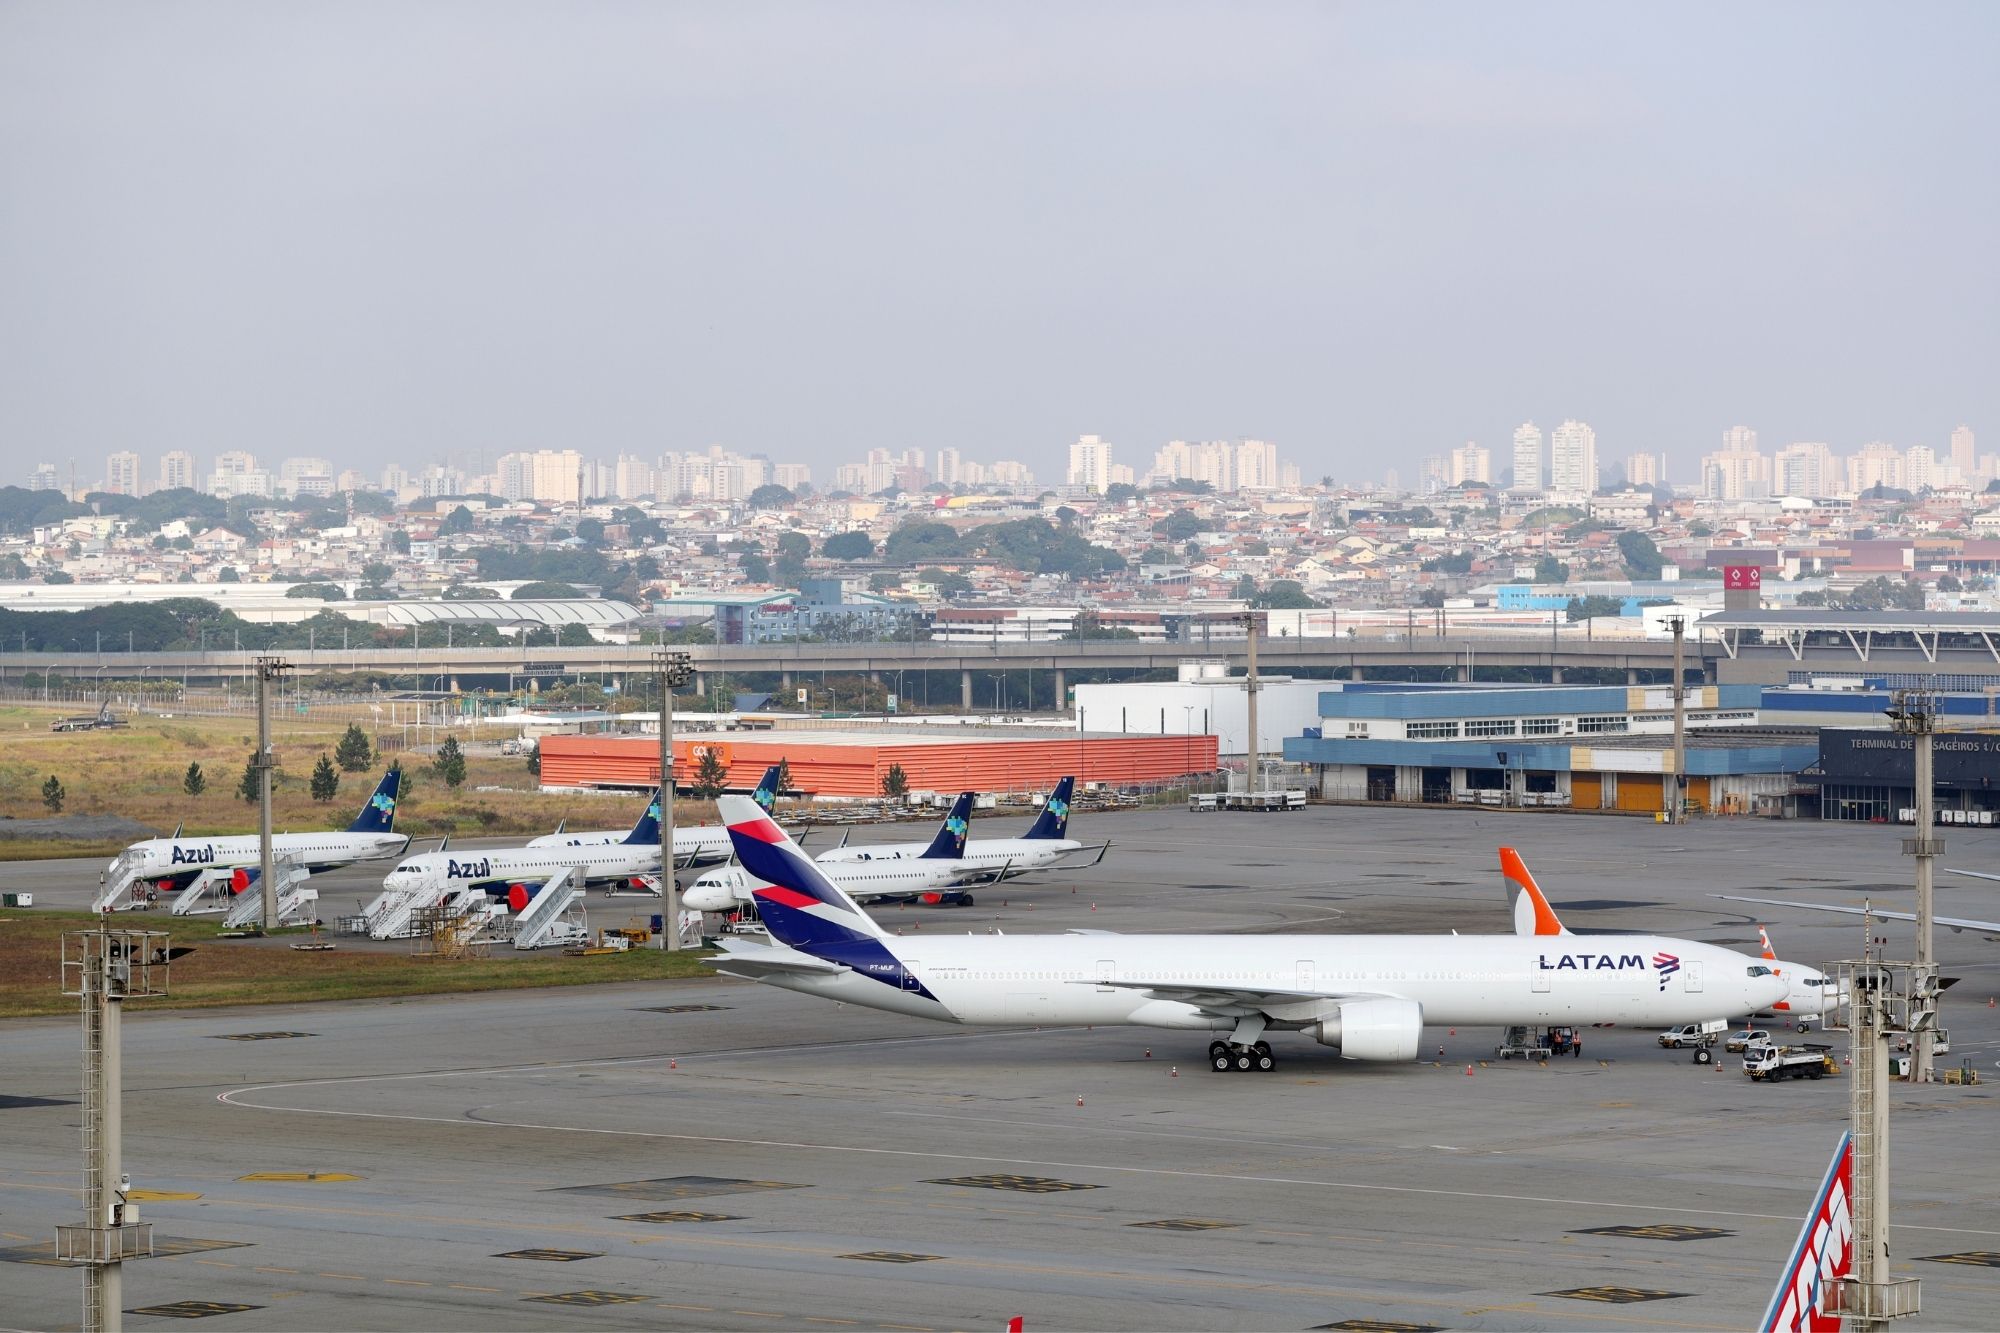 Azul quer comprar operação da Latam Airlines no Brasil - Forbes